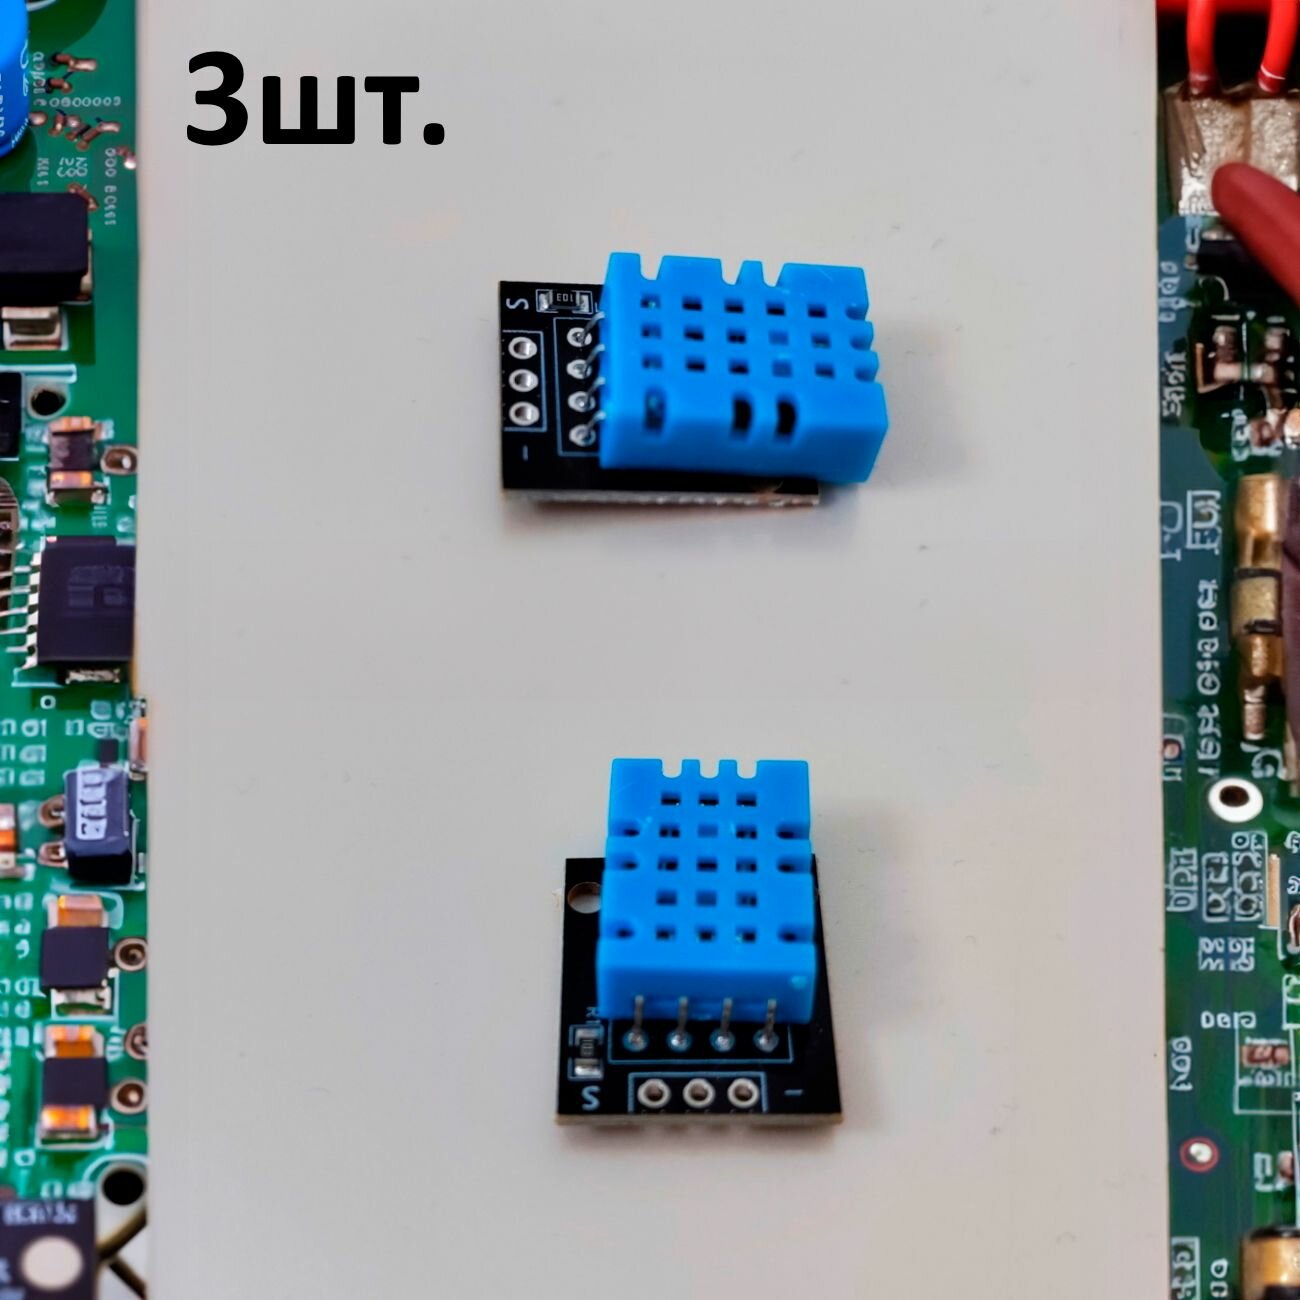 Датчик температуры и влажности KY-015 без контактов на плате для Arduino 3шт.